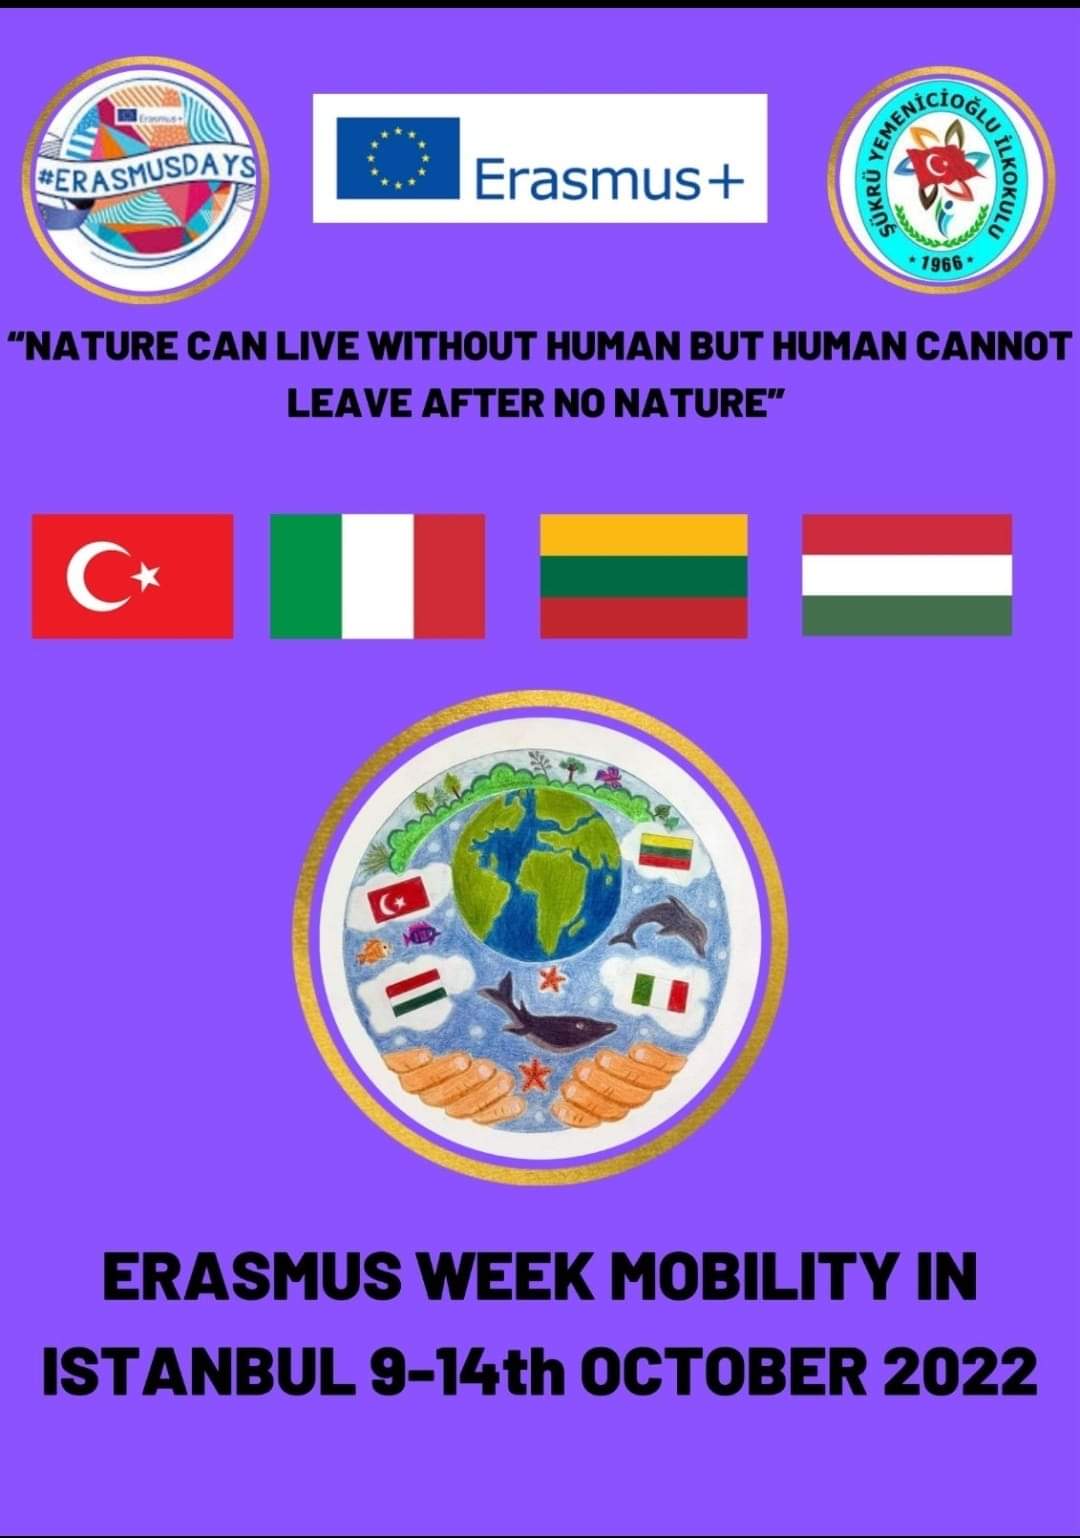 ERASMUS WEEK MOBILITY IN ISTANBUL